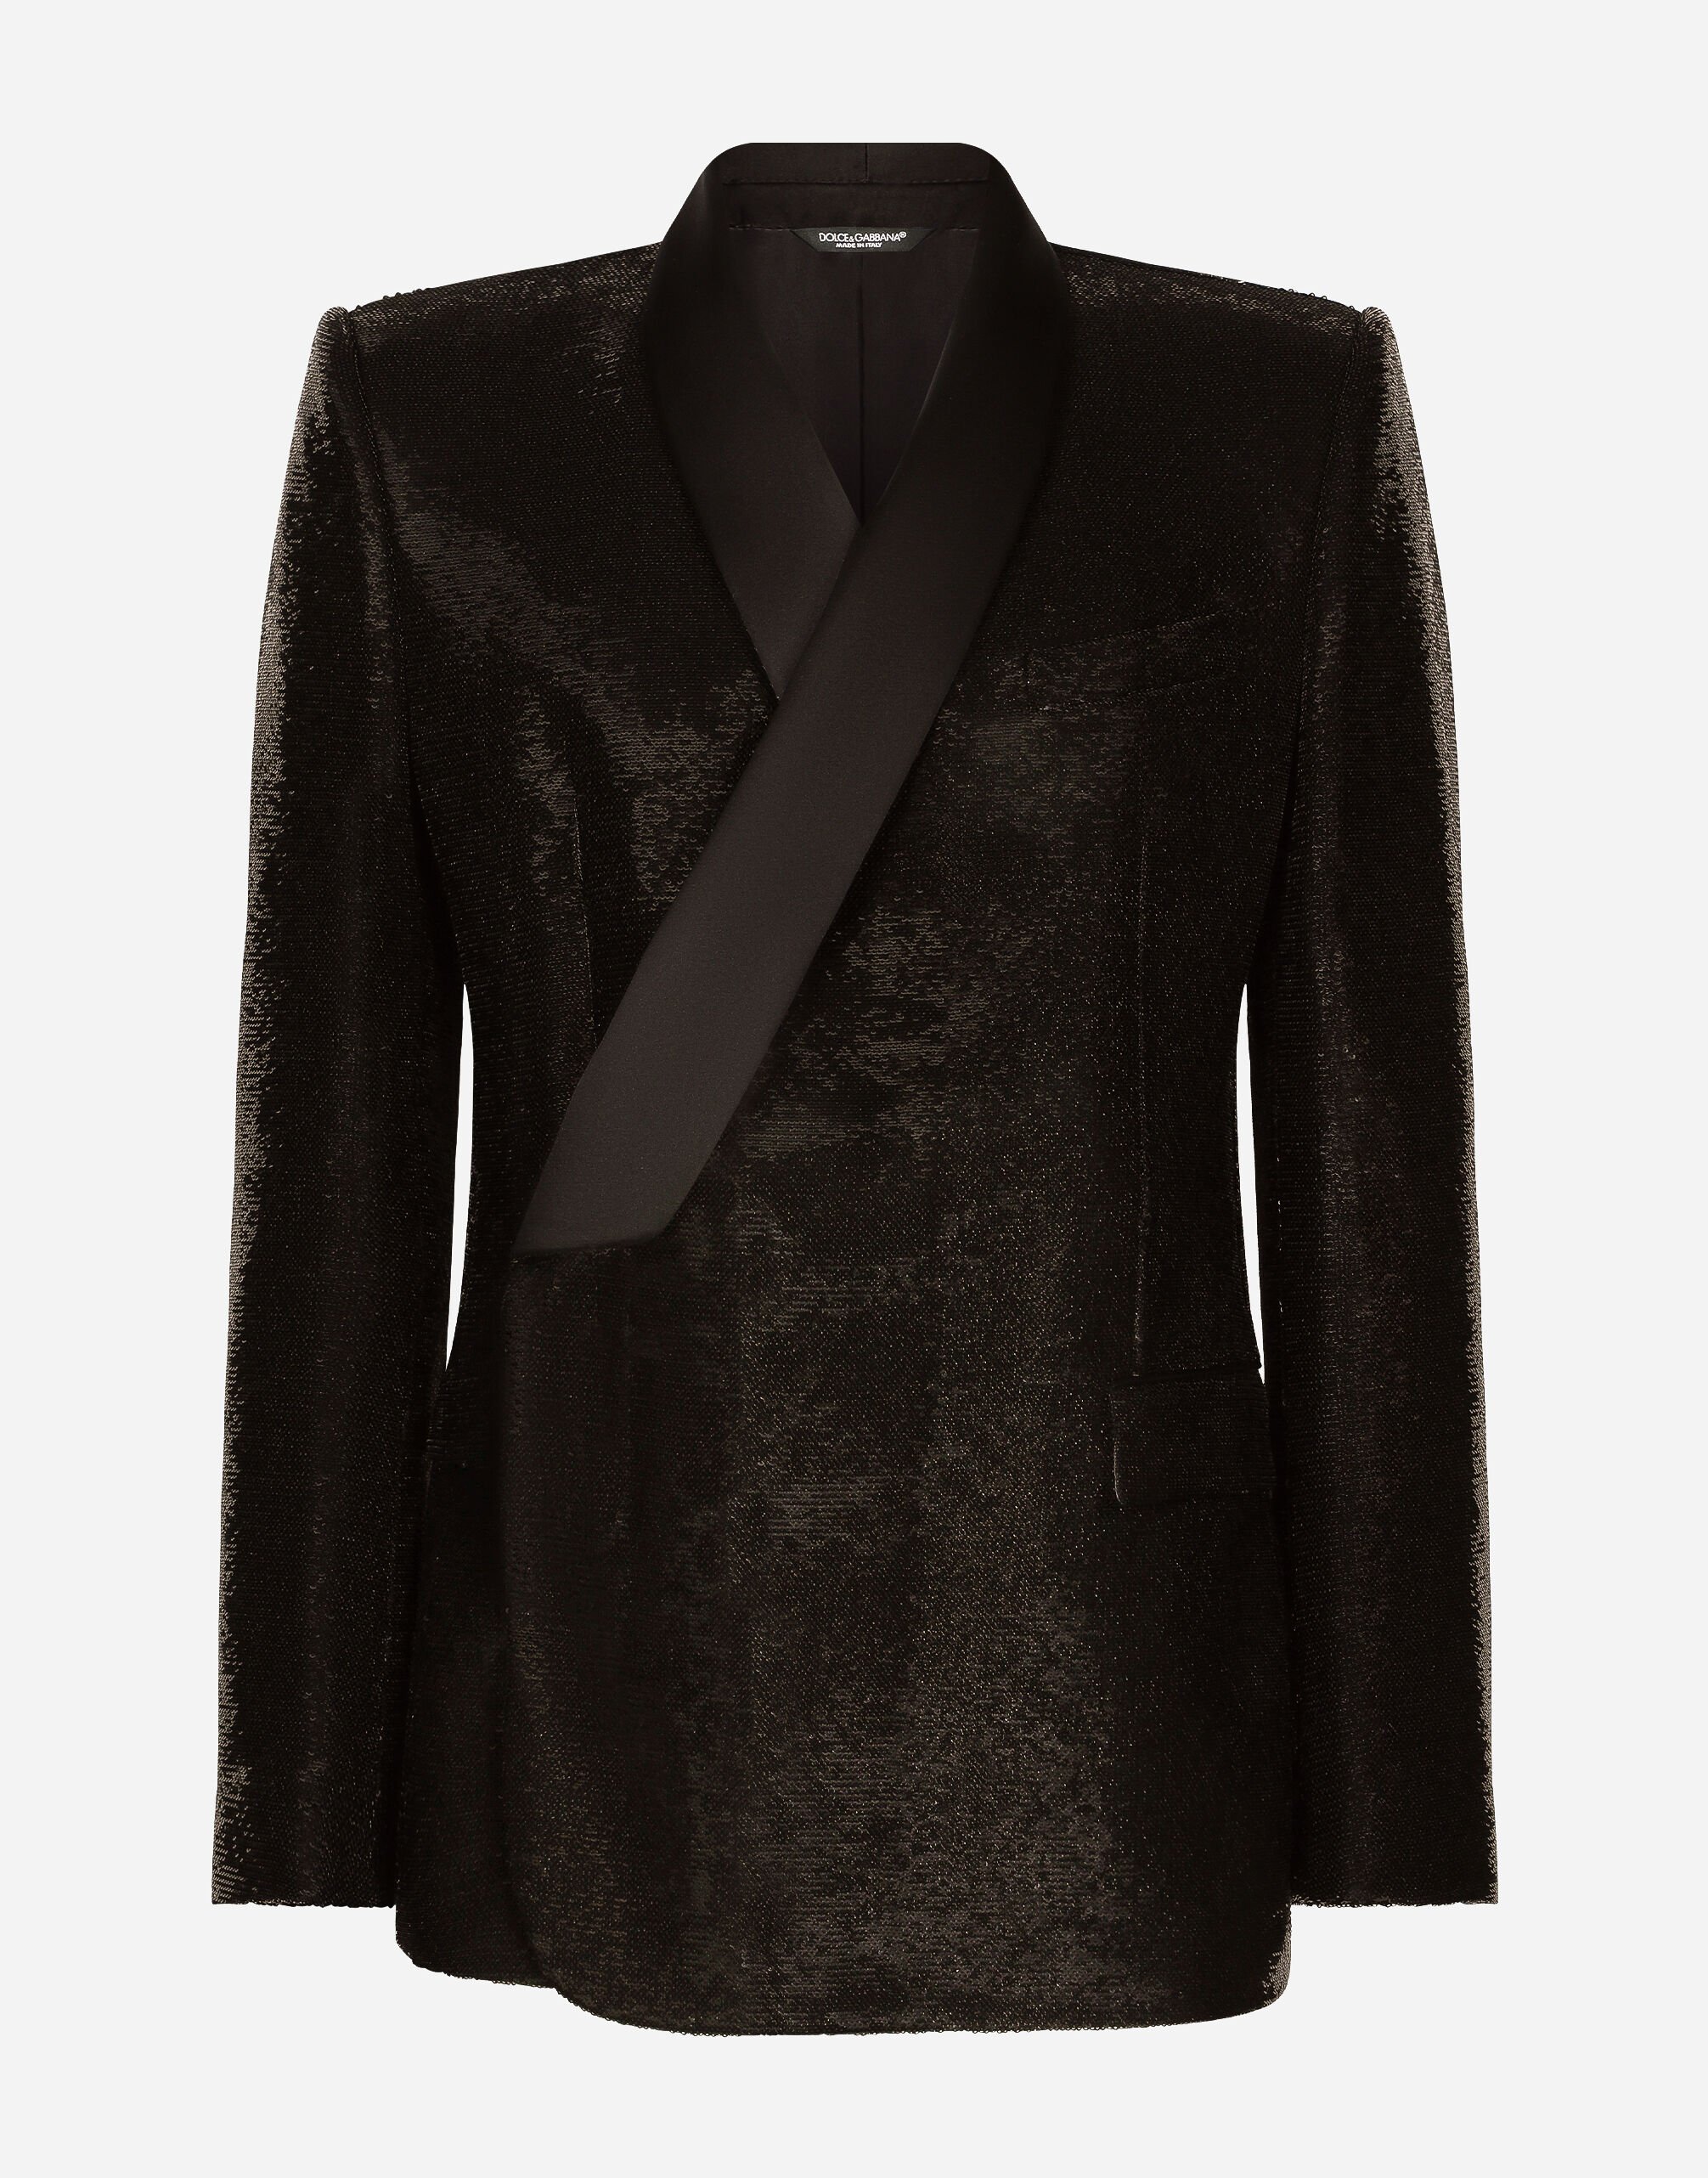 Dolce & Gabbana Giacca sicilia tuxedo doppiopetto in paillettes Argento G2QU6TFLSEP